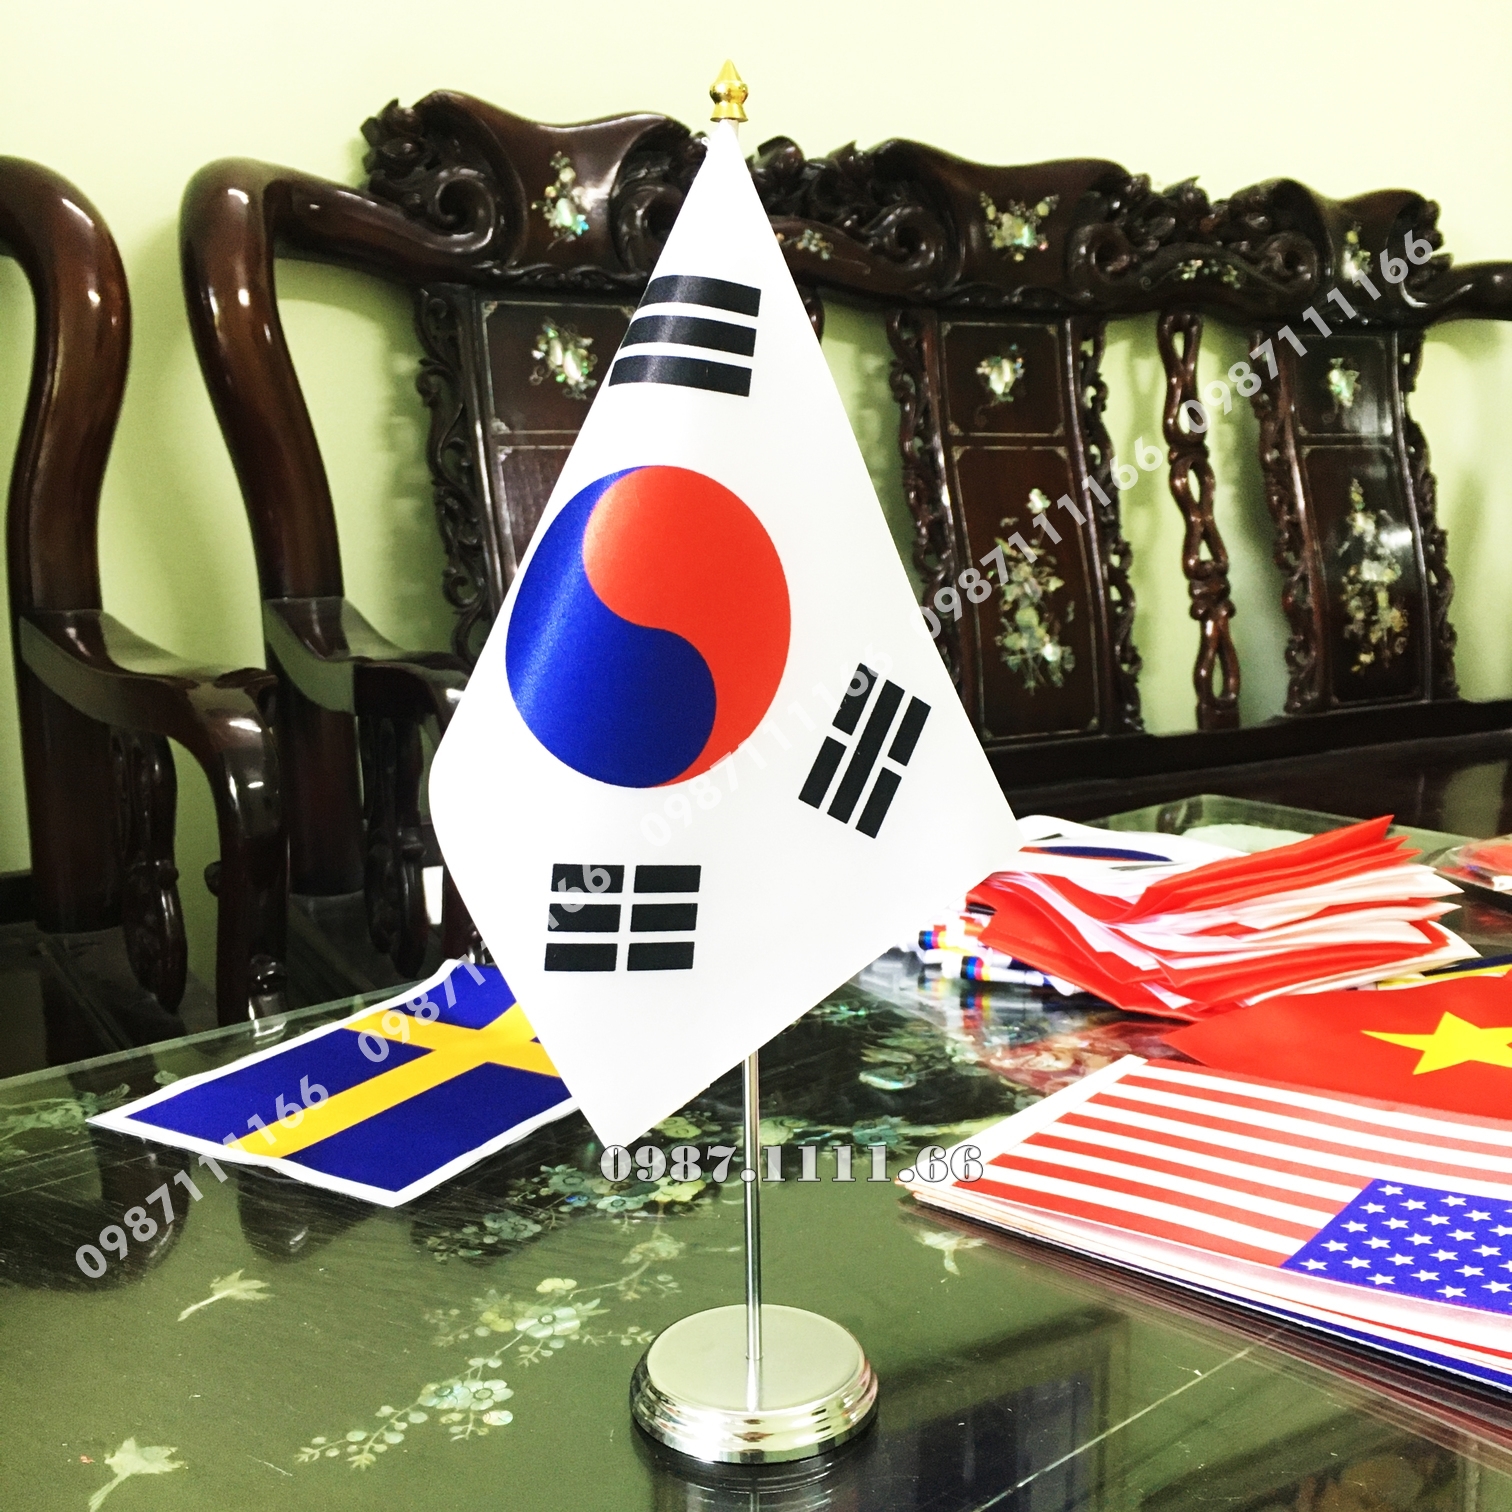 Cờ Hàn Quốc để bàn: Với chiếc cờ Hàn Quốc để bàn, bạn có thể dễ dàng cập nhật thông tin về quốc gia Hàn Quốc mọi lúc mọi nơi. Cờ cũng là một vật phẩm phòng ngủ vô cùng lịch sự. Hãy để chiếc cờ Hàn Quốc trải nghiệm cho bạn những giây phút thư giãn và cảm nhận đất nước này qua mỗi hình ảnh.